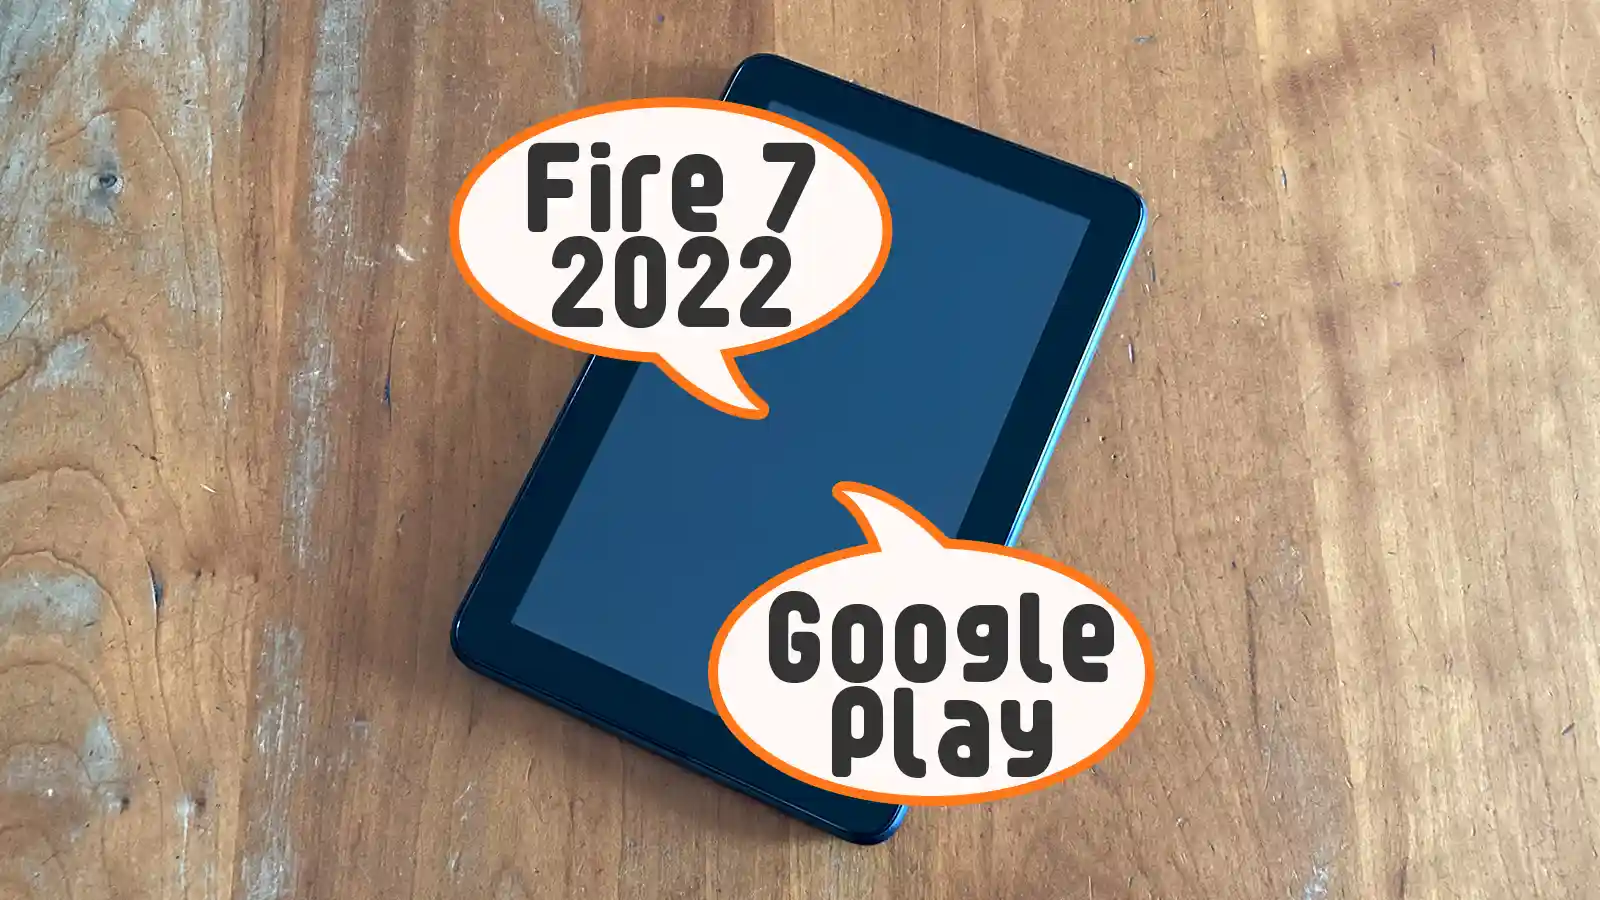 Amazon Fireタブレット Fire 7 2022年モデル Google Play インストール